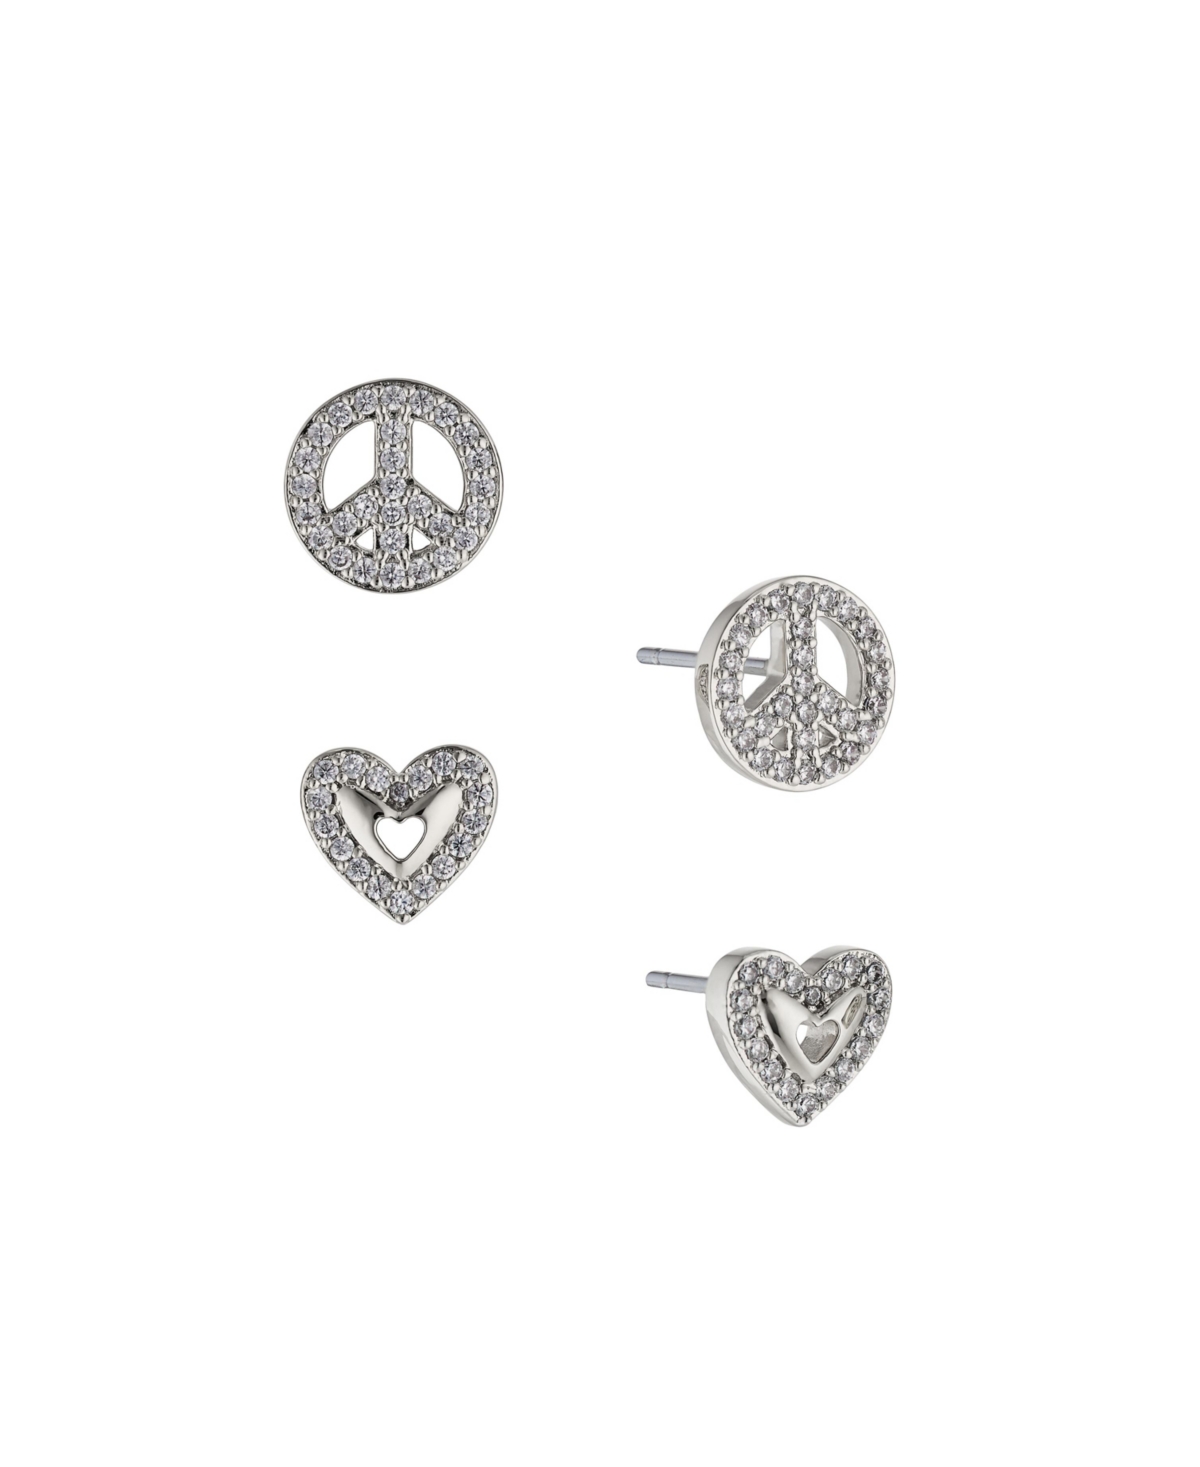 Women's Peace Heart Earring Set, 2 Piece - Silver-tone